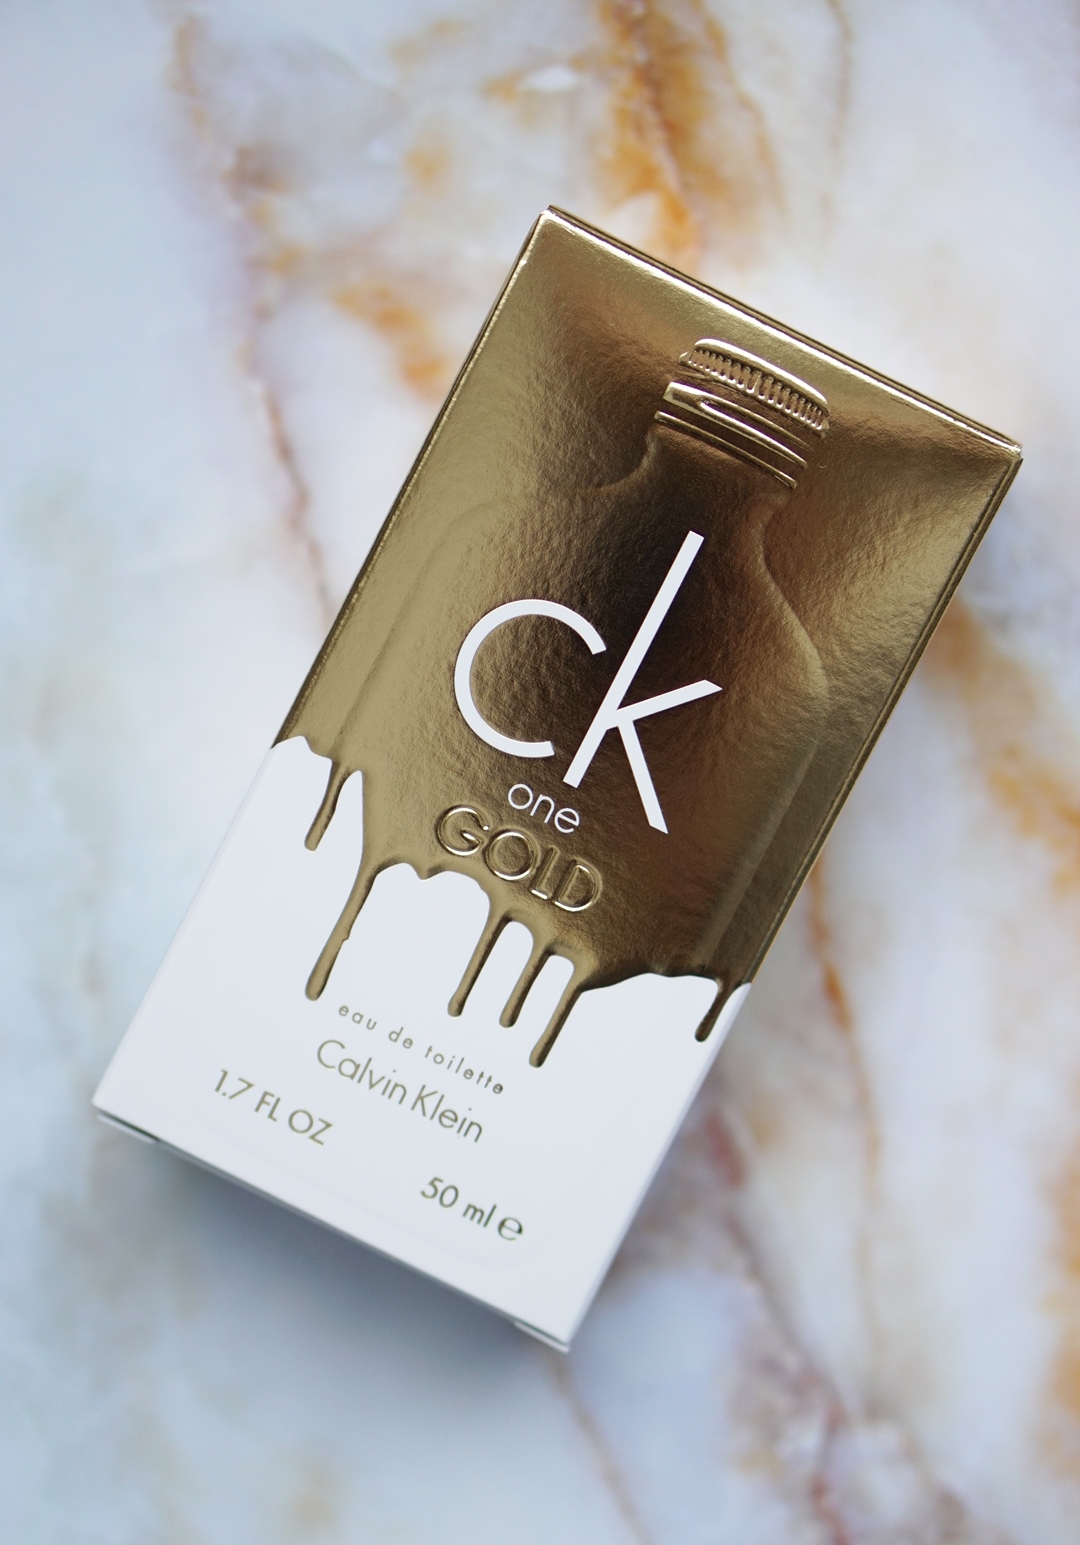 CK One Gold eau de toilette